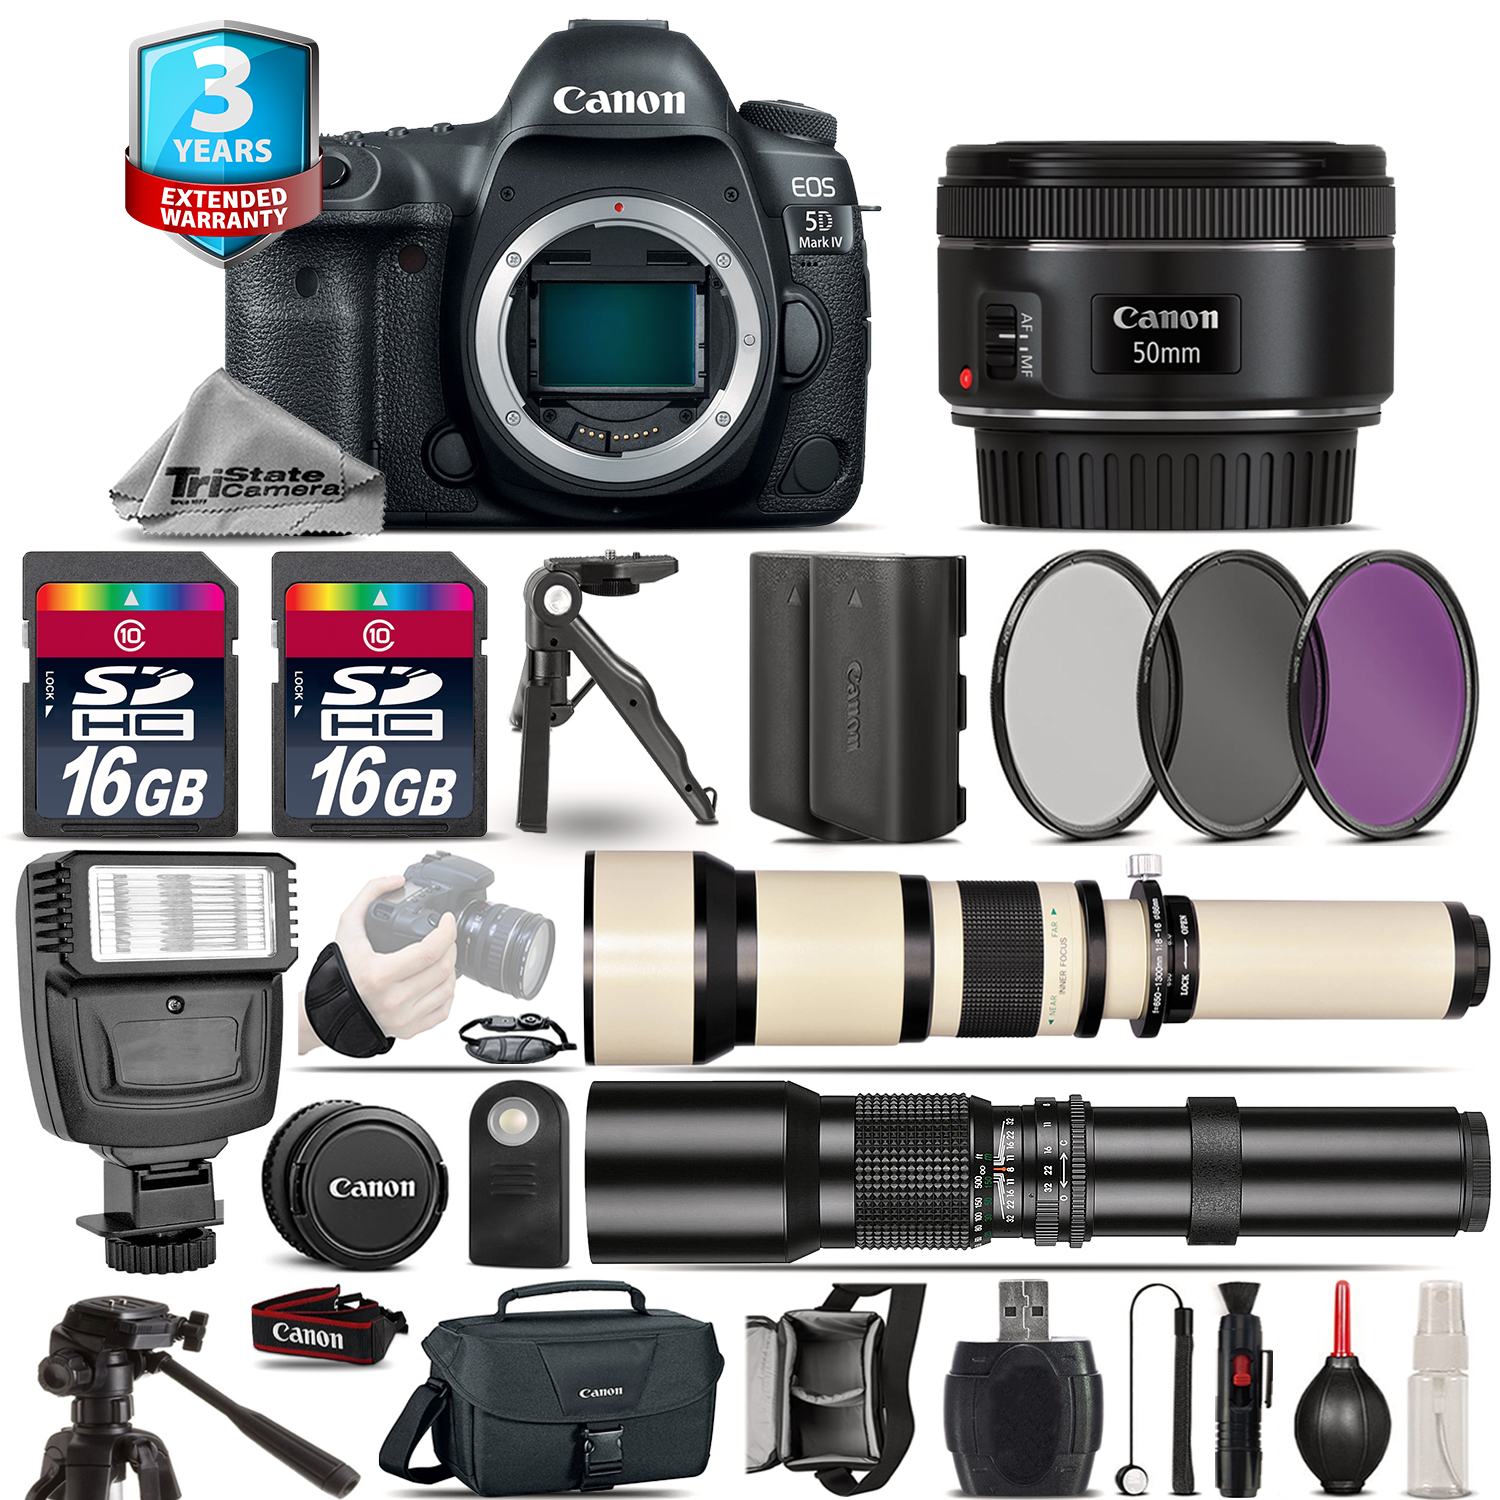 EOS 5D Mark IV Camera + 50mm + 650-1300mm +500mm + EXT BATT + 2yr Warranty *FREE SHIPPING*